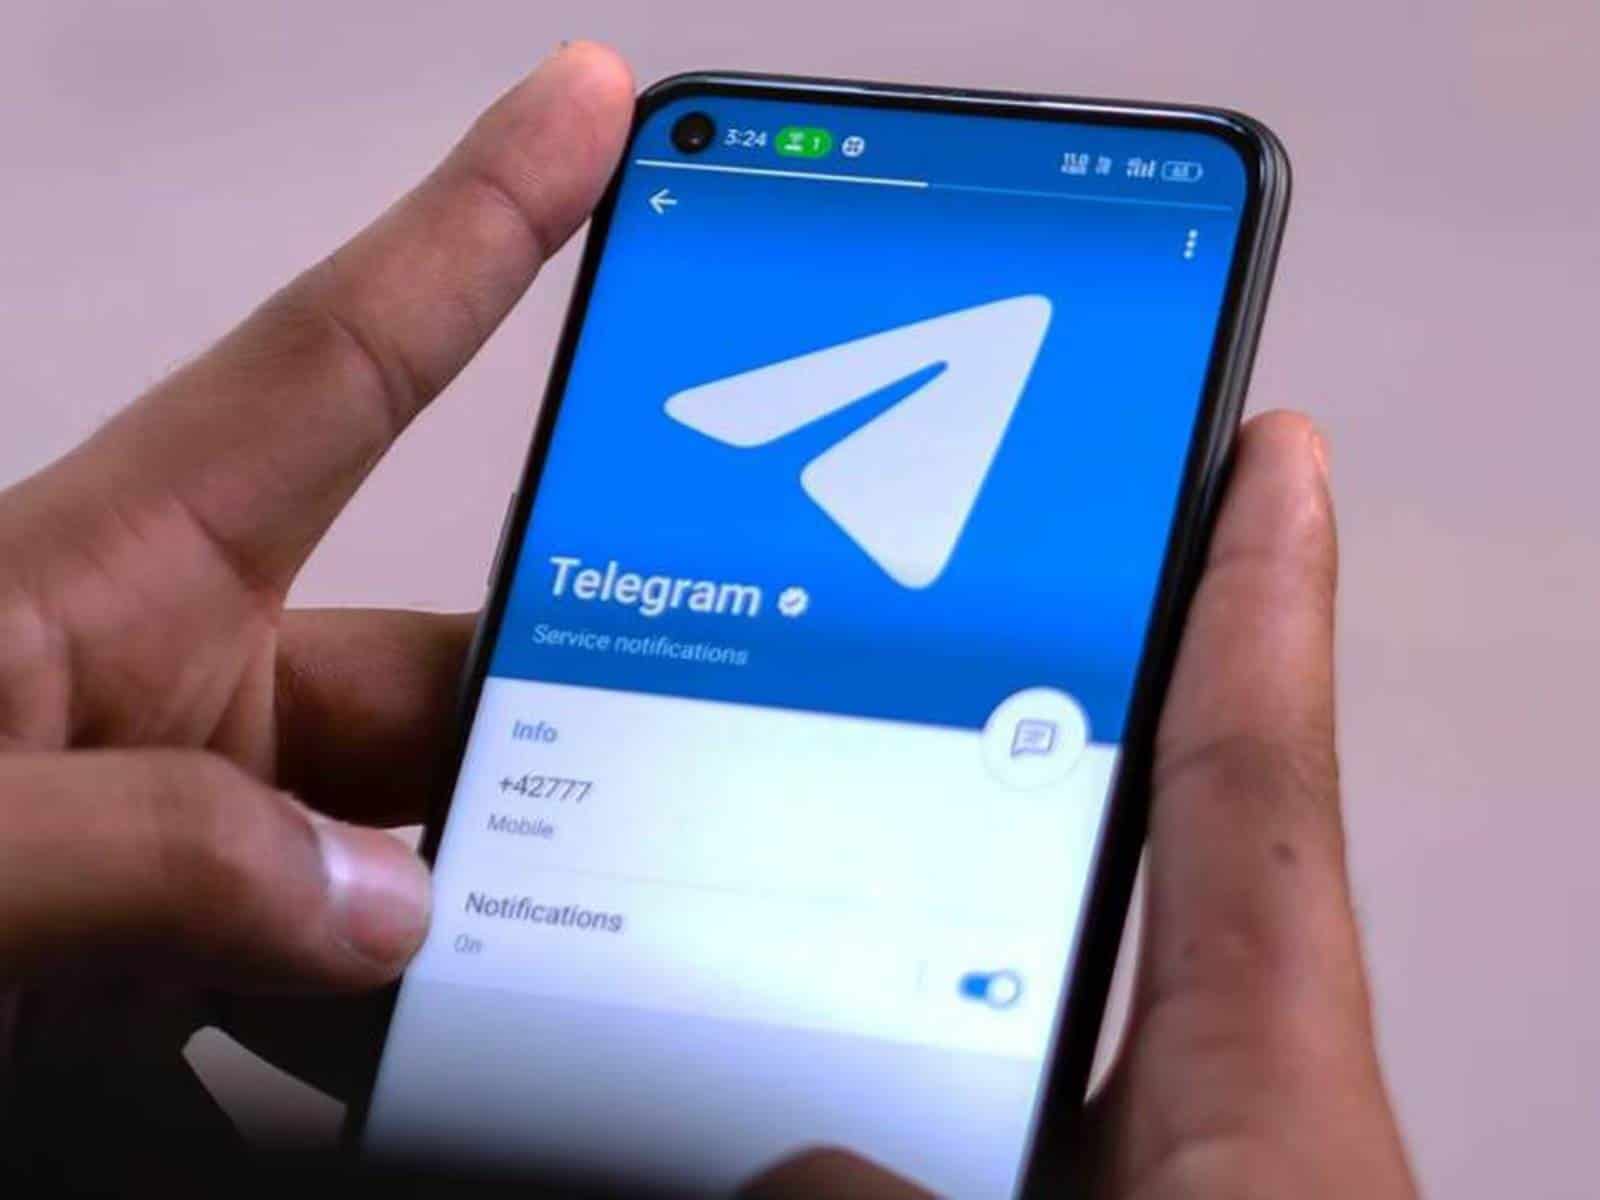 Juez español da tres horas a las operadoras para bloquear Telegram